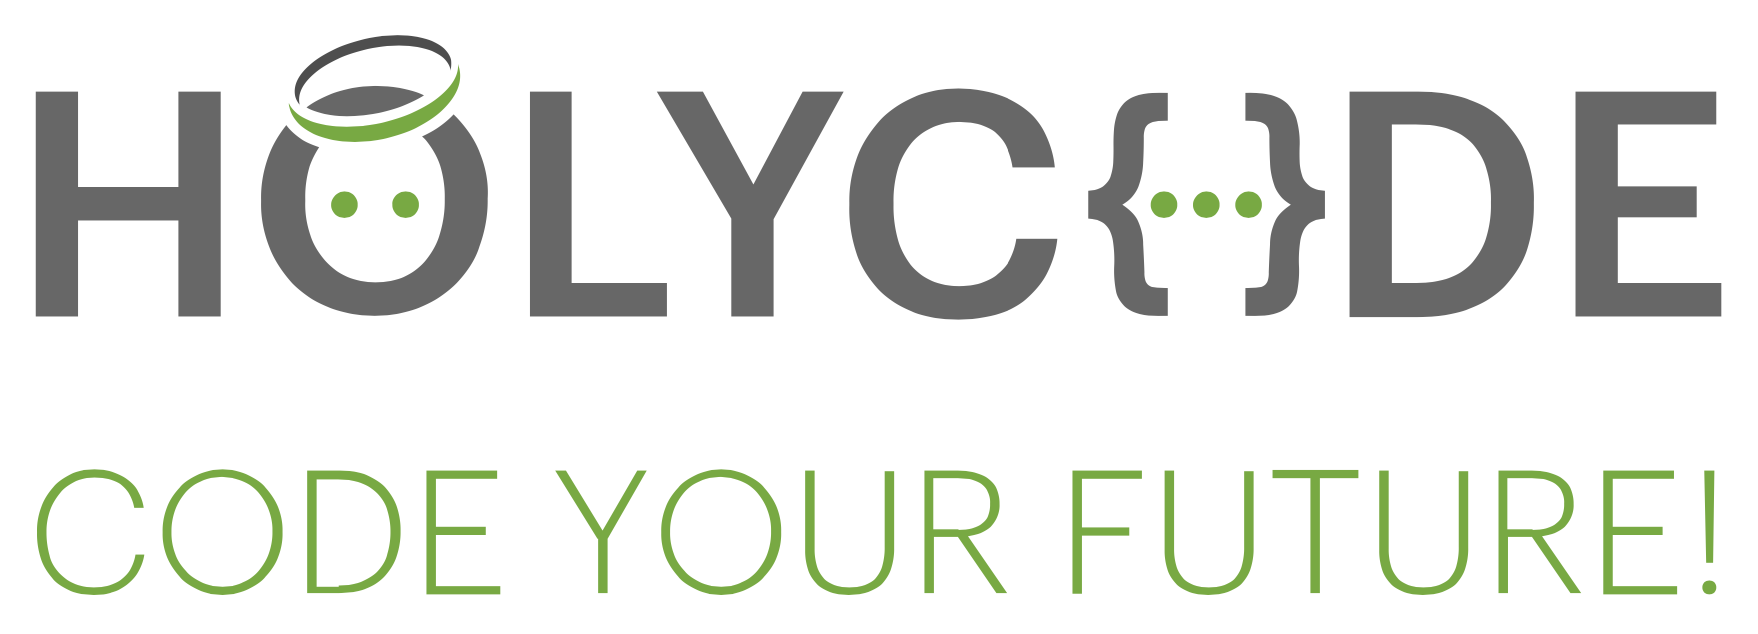 holycode-logo